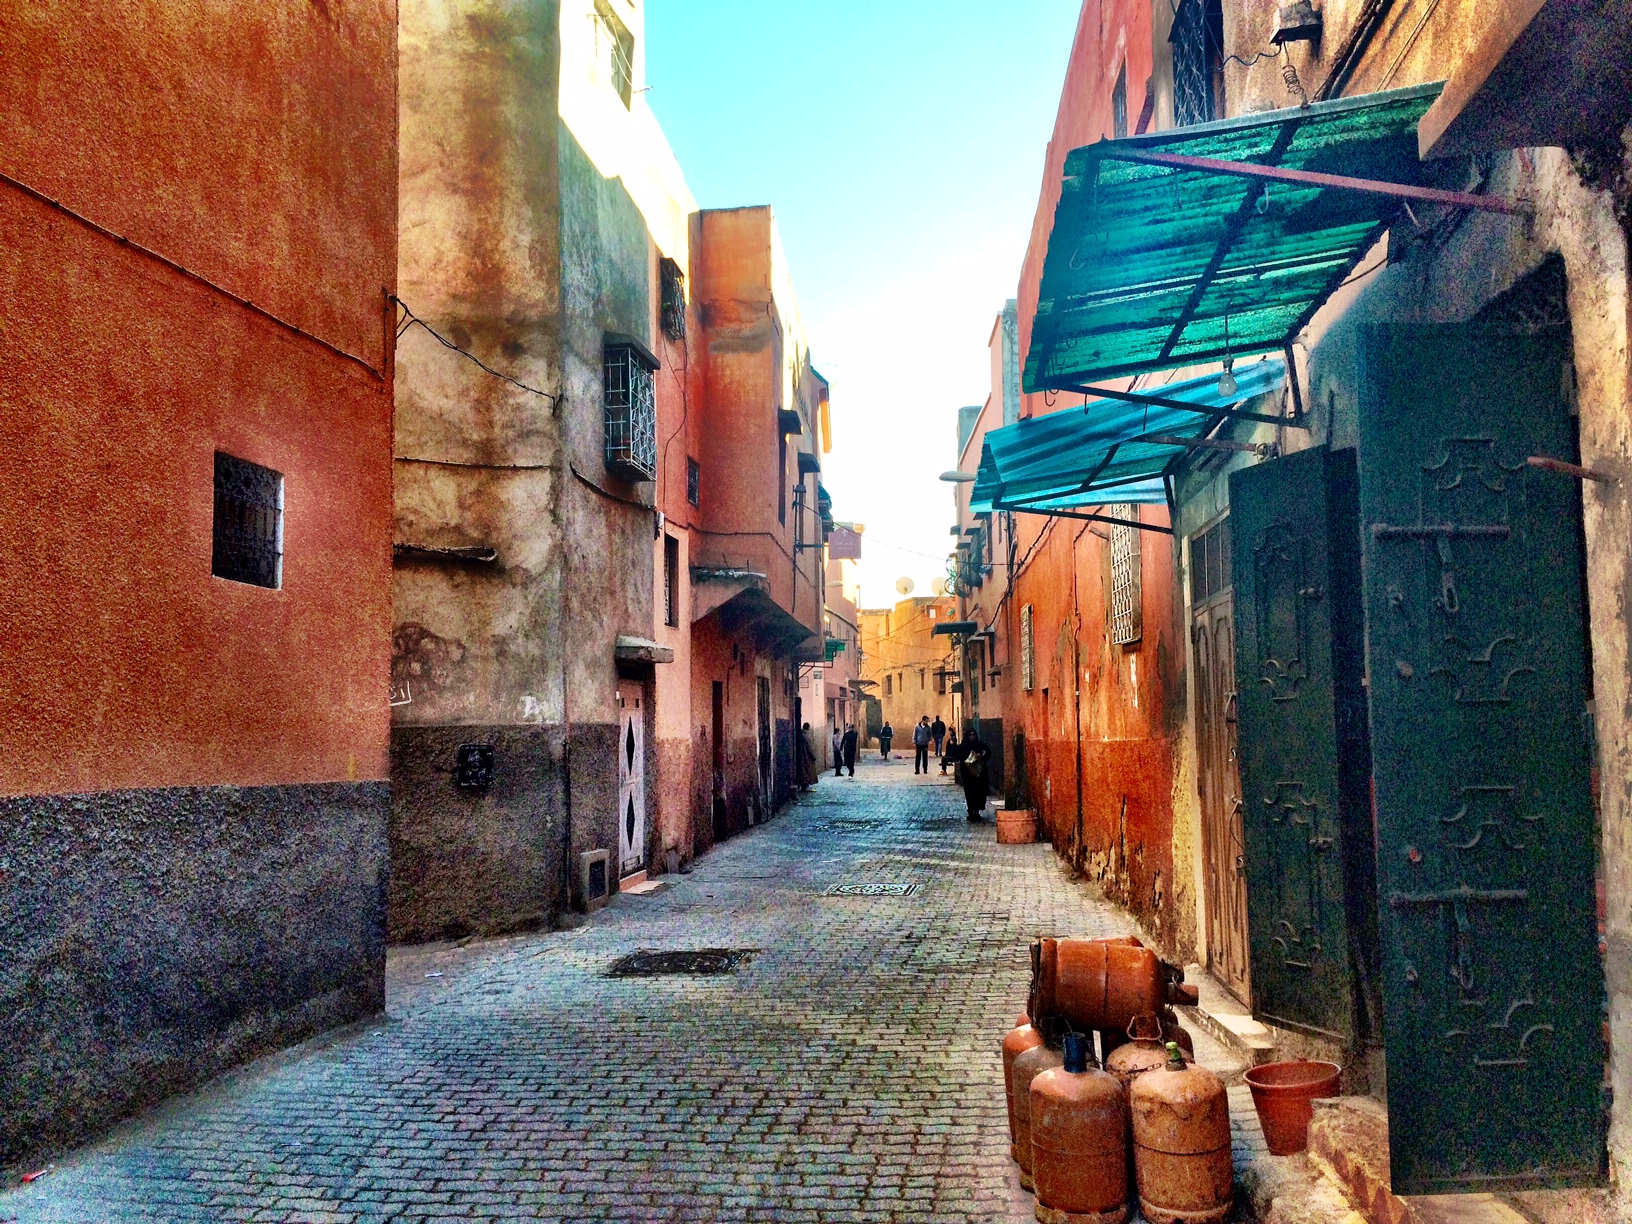 Leaving Marrakech